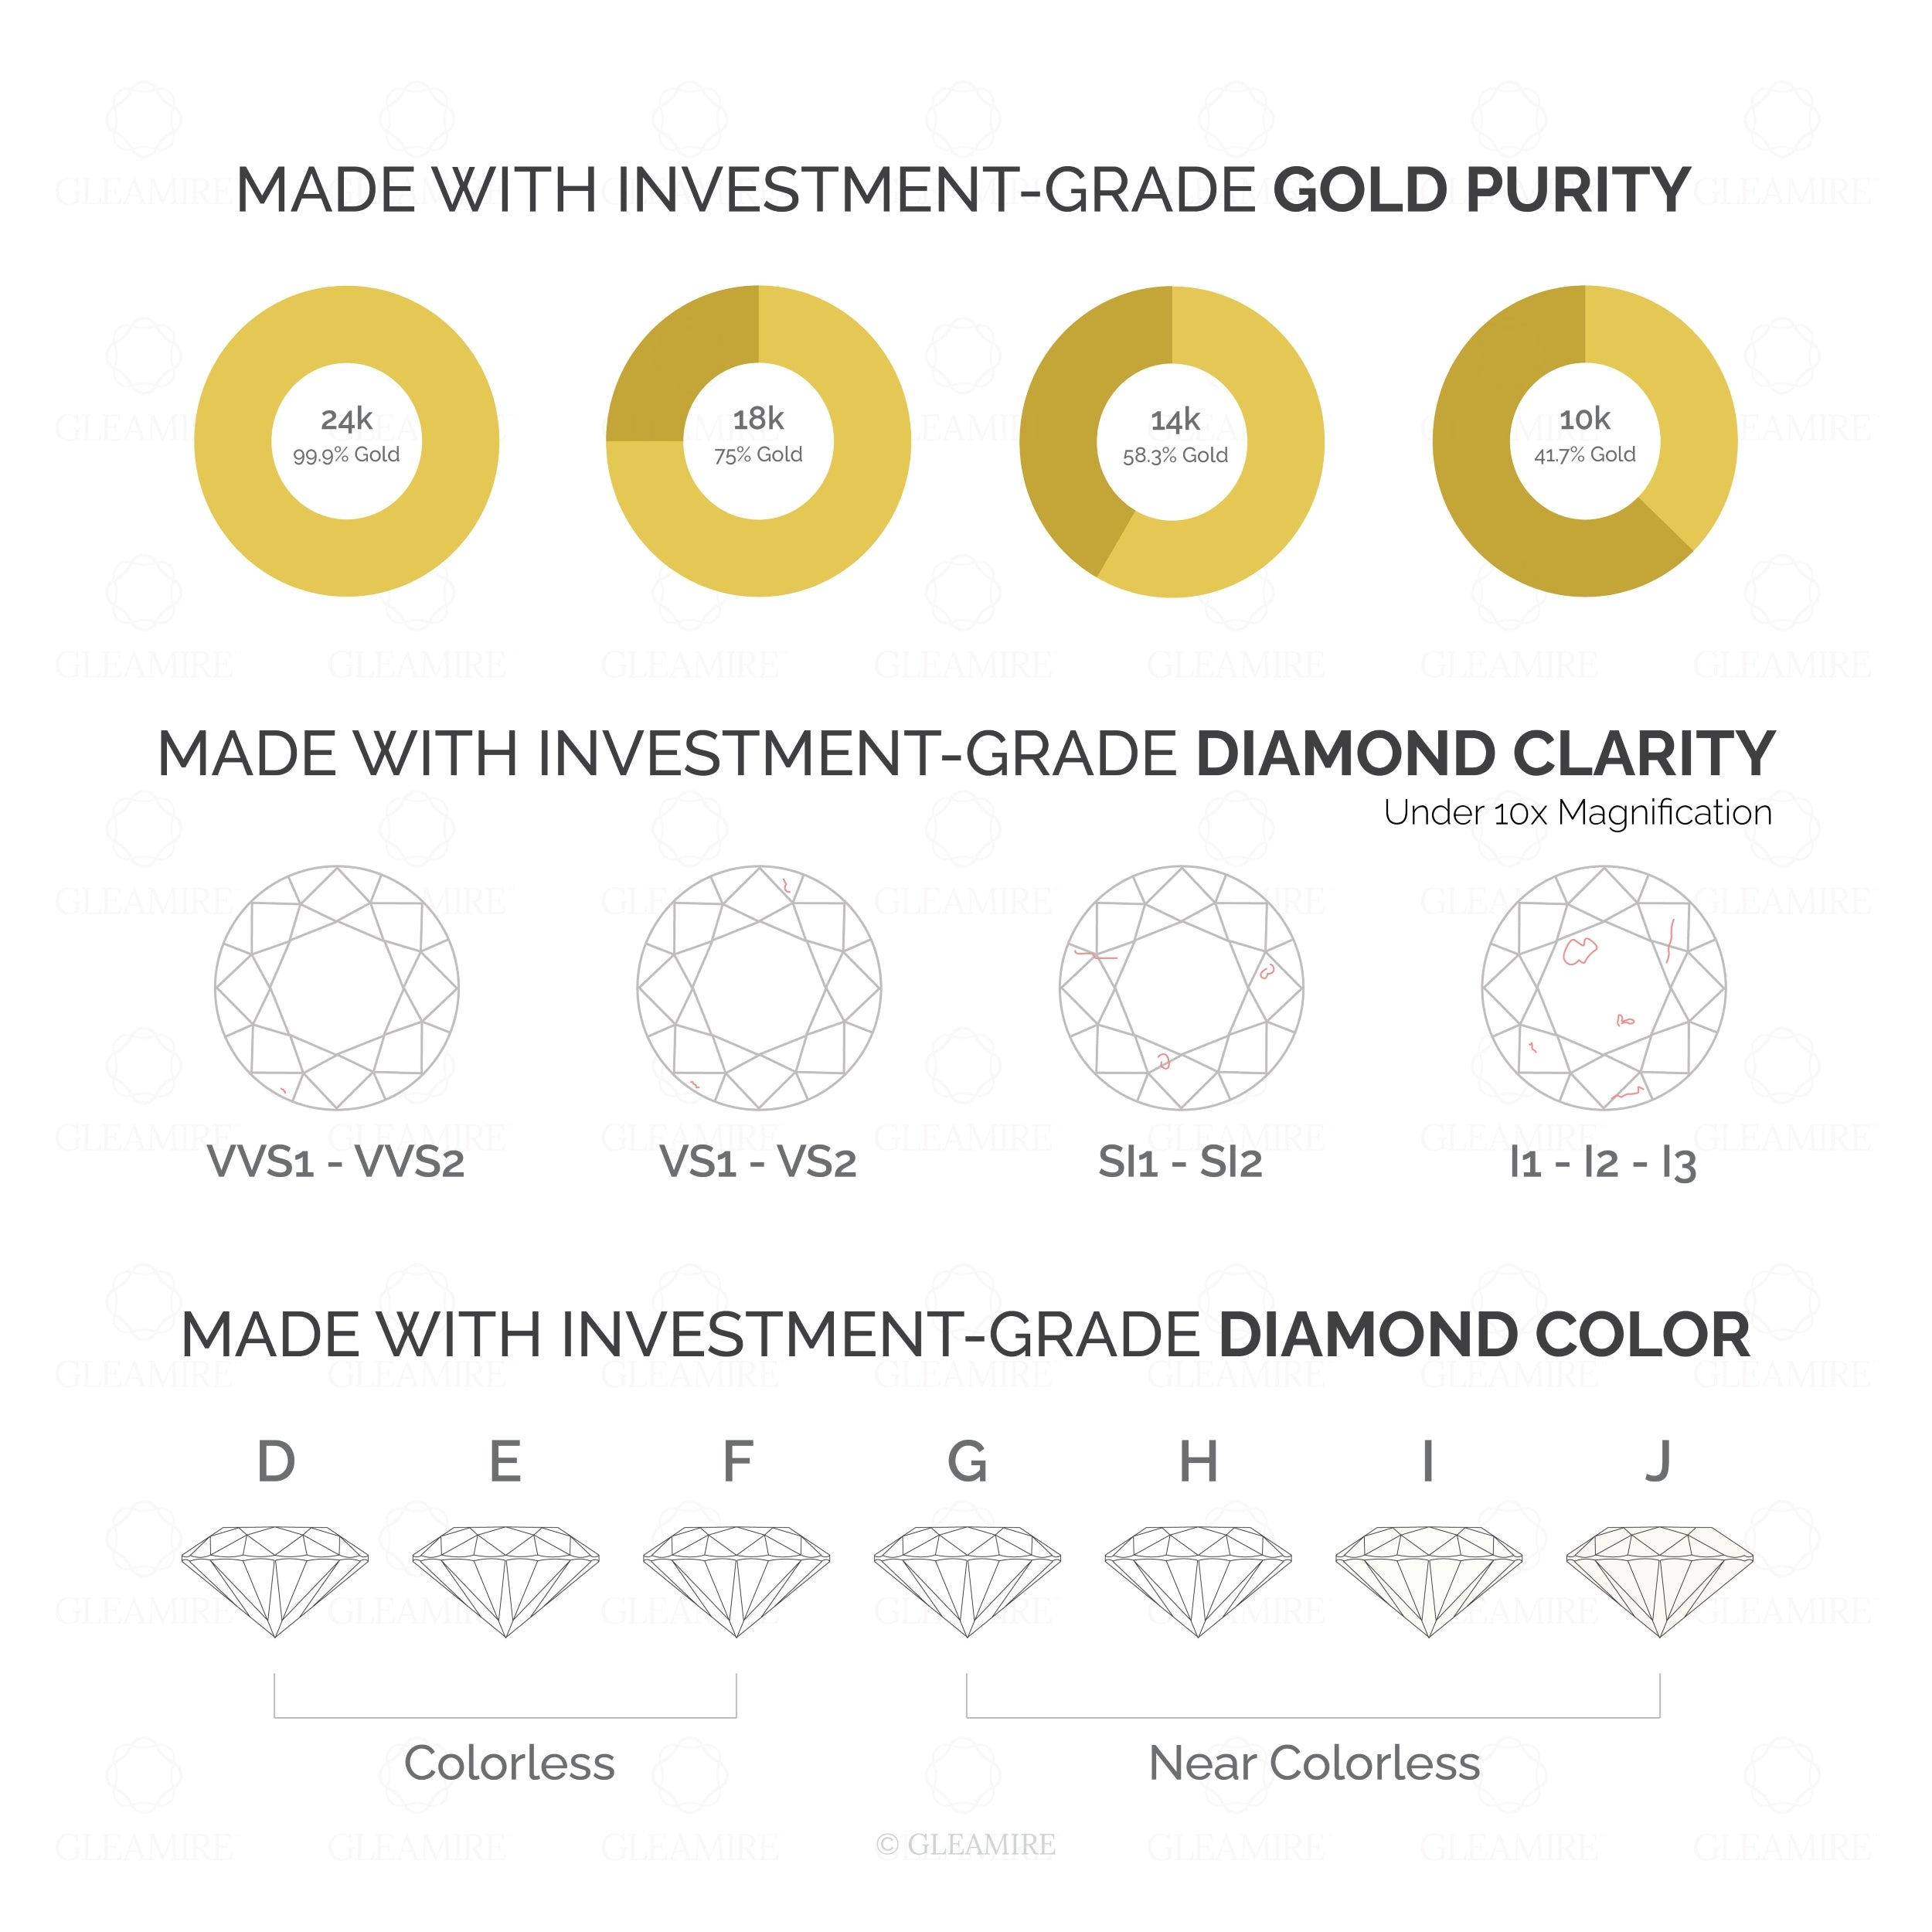 Certified 14K Gold 0.2ct Natural Diamond E-VS Designer Rose Necklace Earrings Set